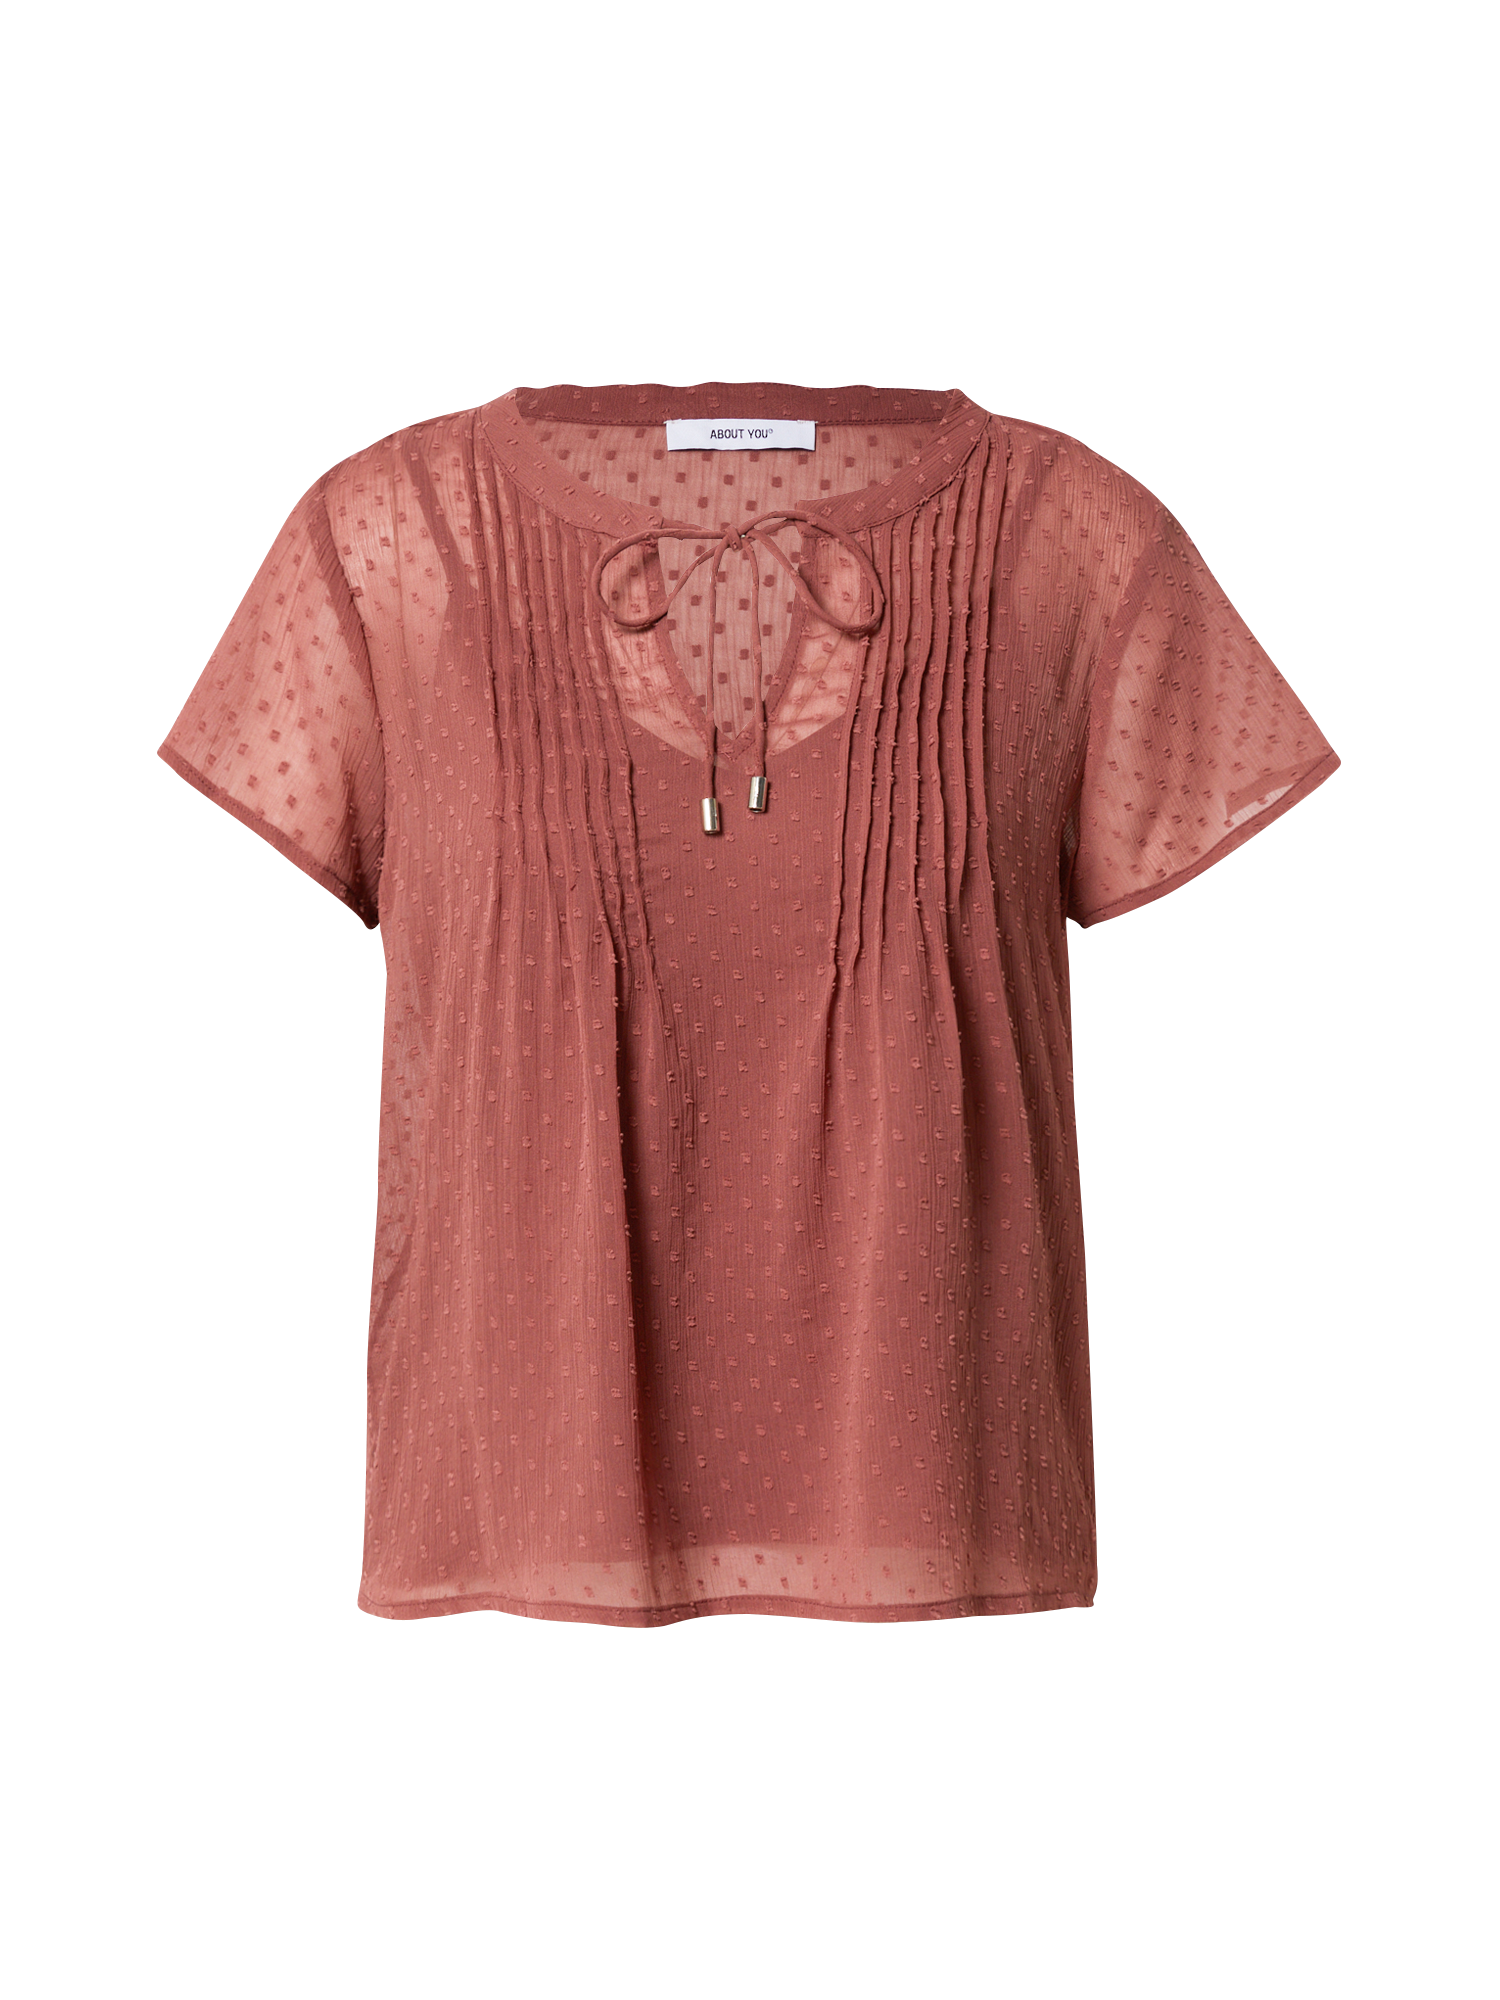 Odzież Kobiety  Koszulka Joanna w kolorze Rdzawobrązowym 